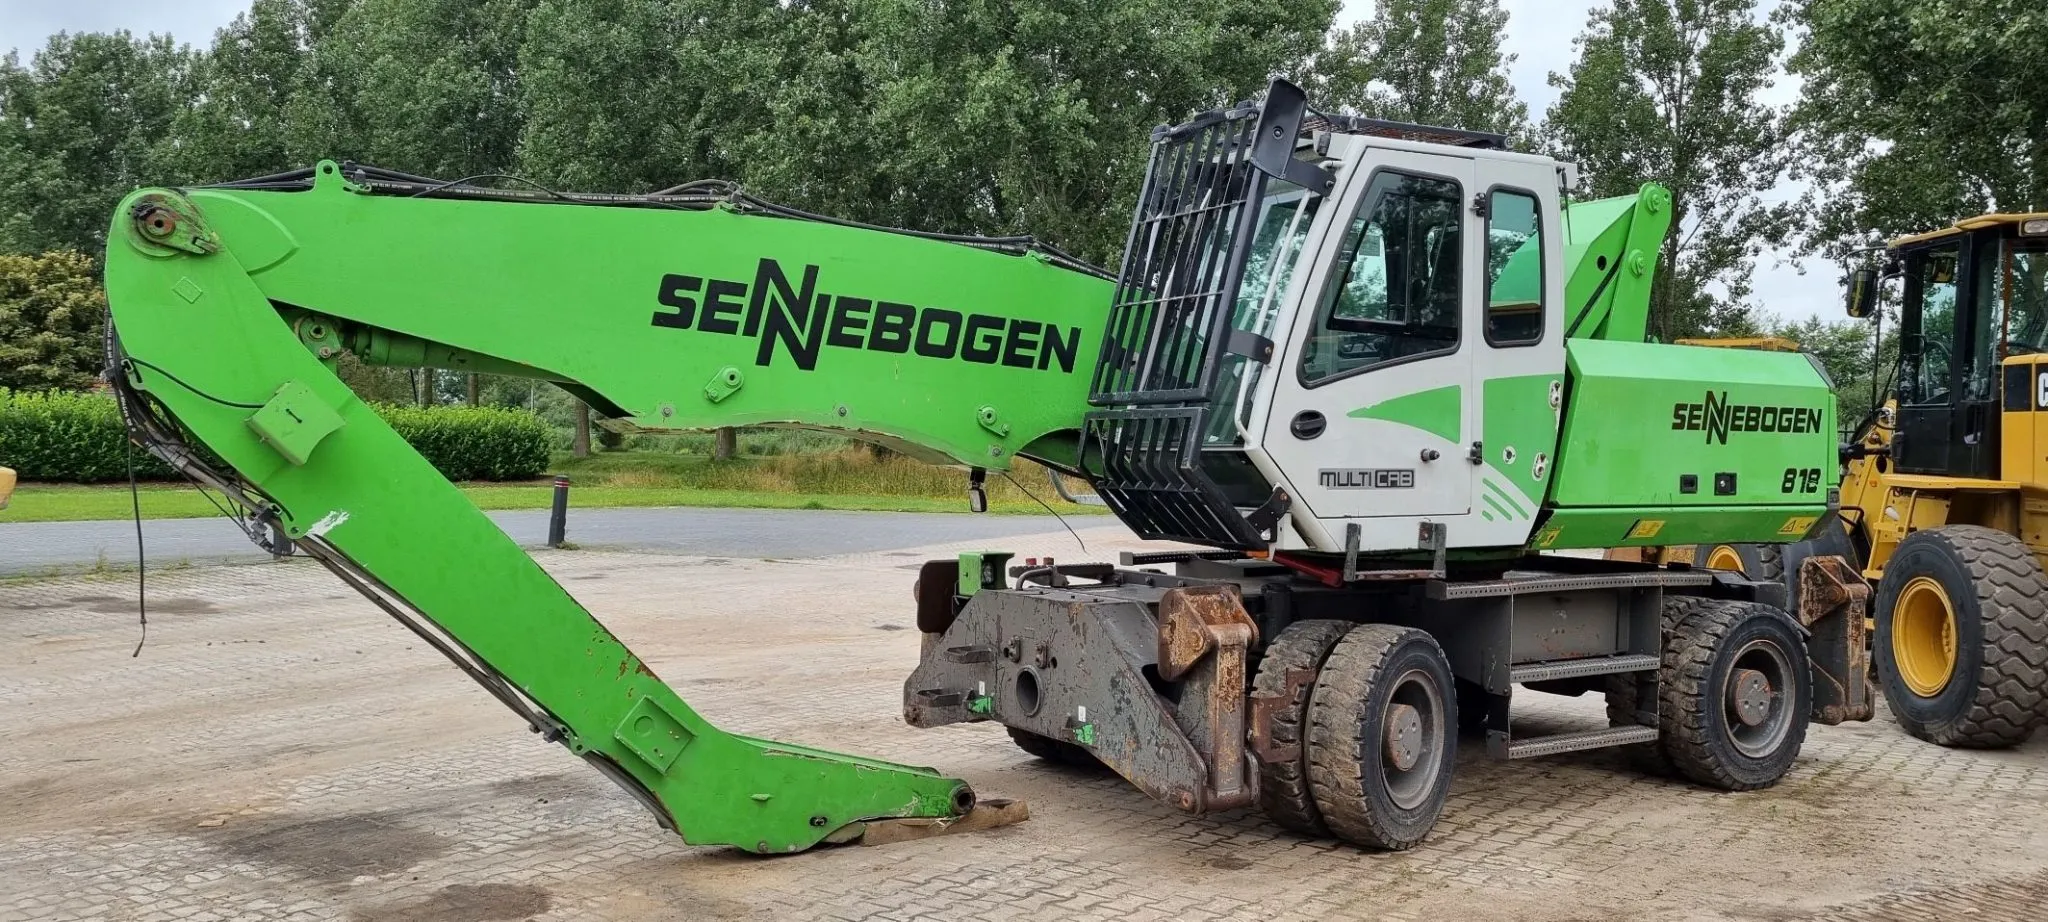 Sold, Sennebogen 818M material handler to Eastern Europe - 2